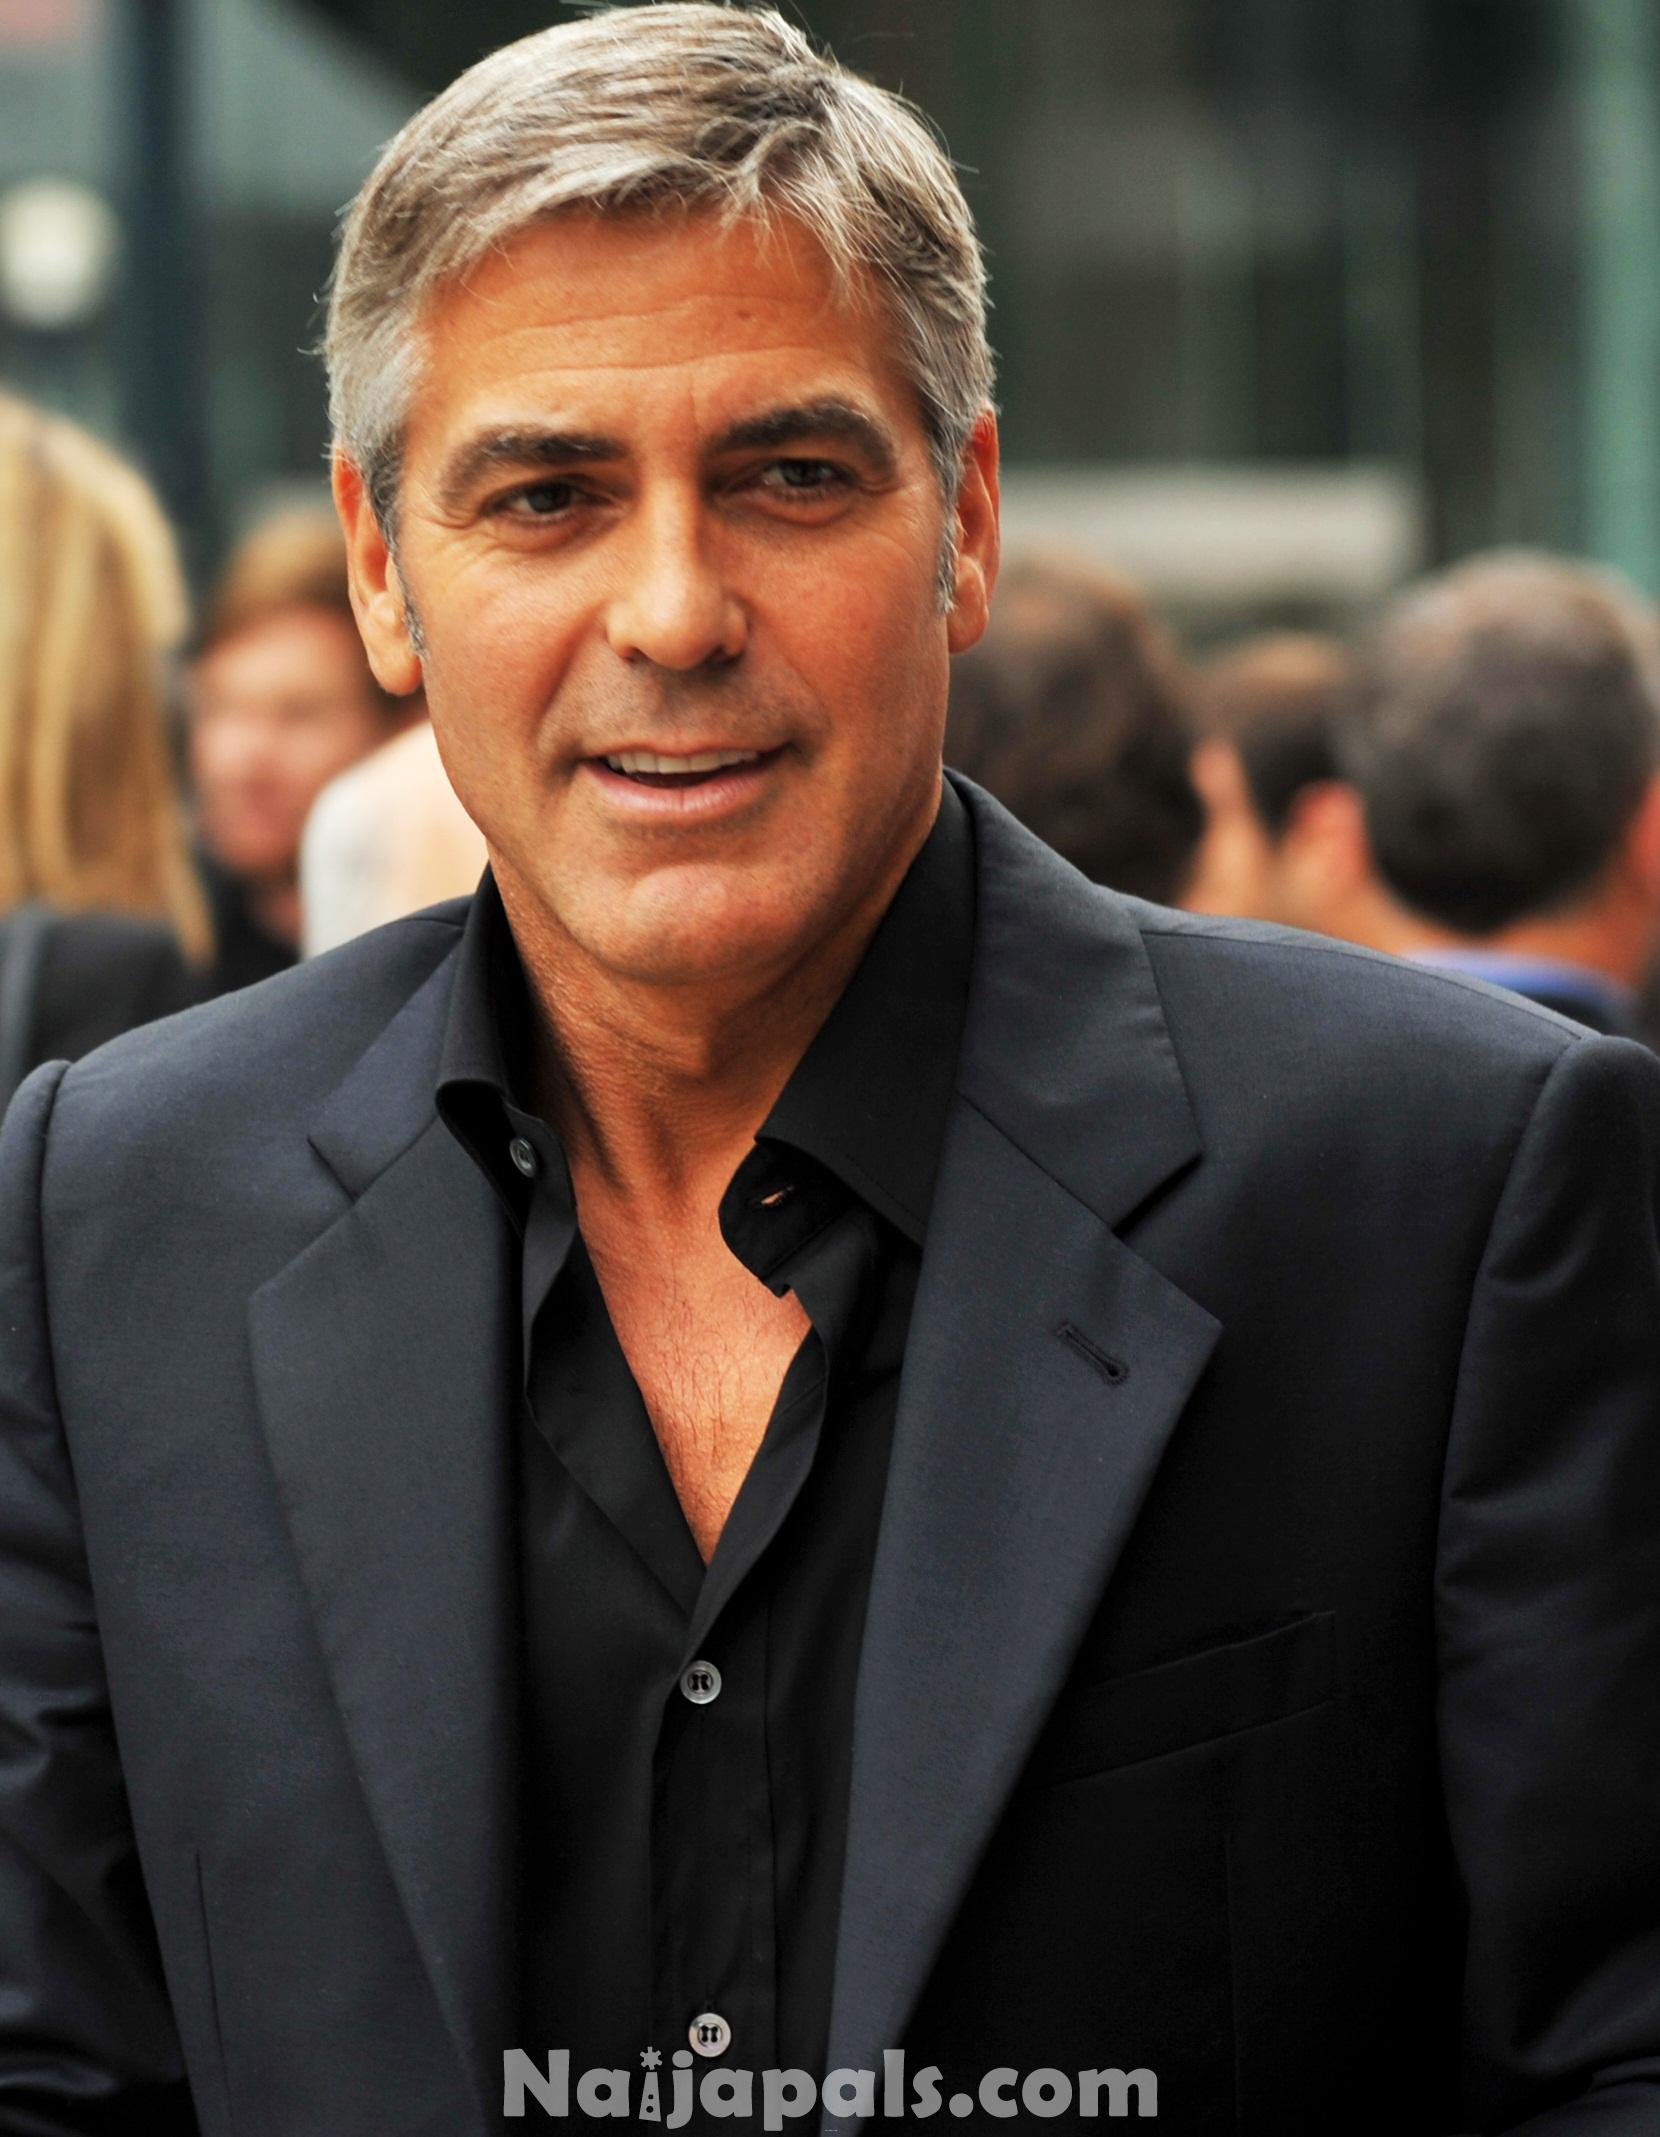 12. George Clooney